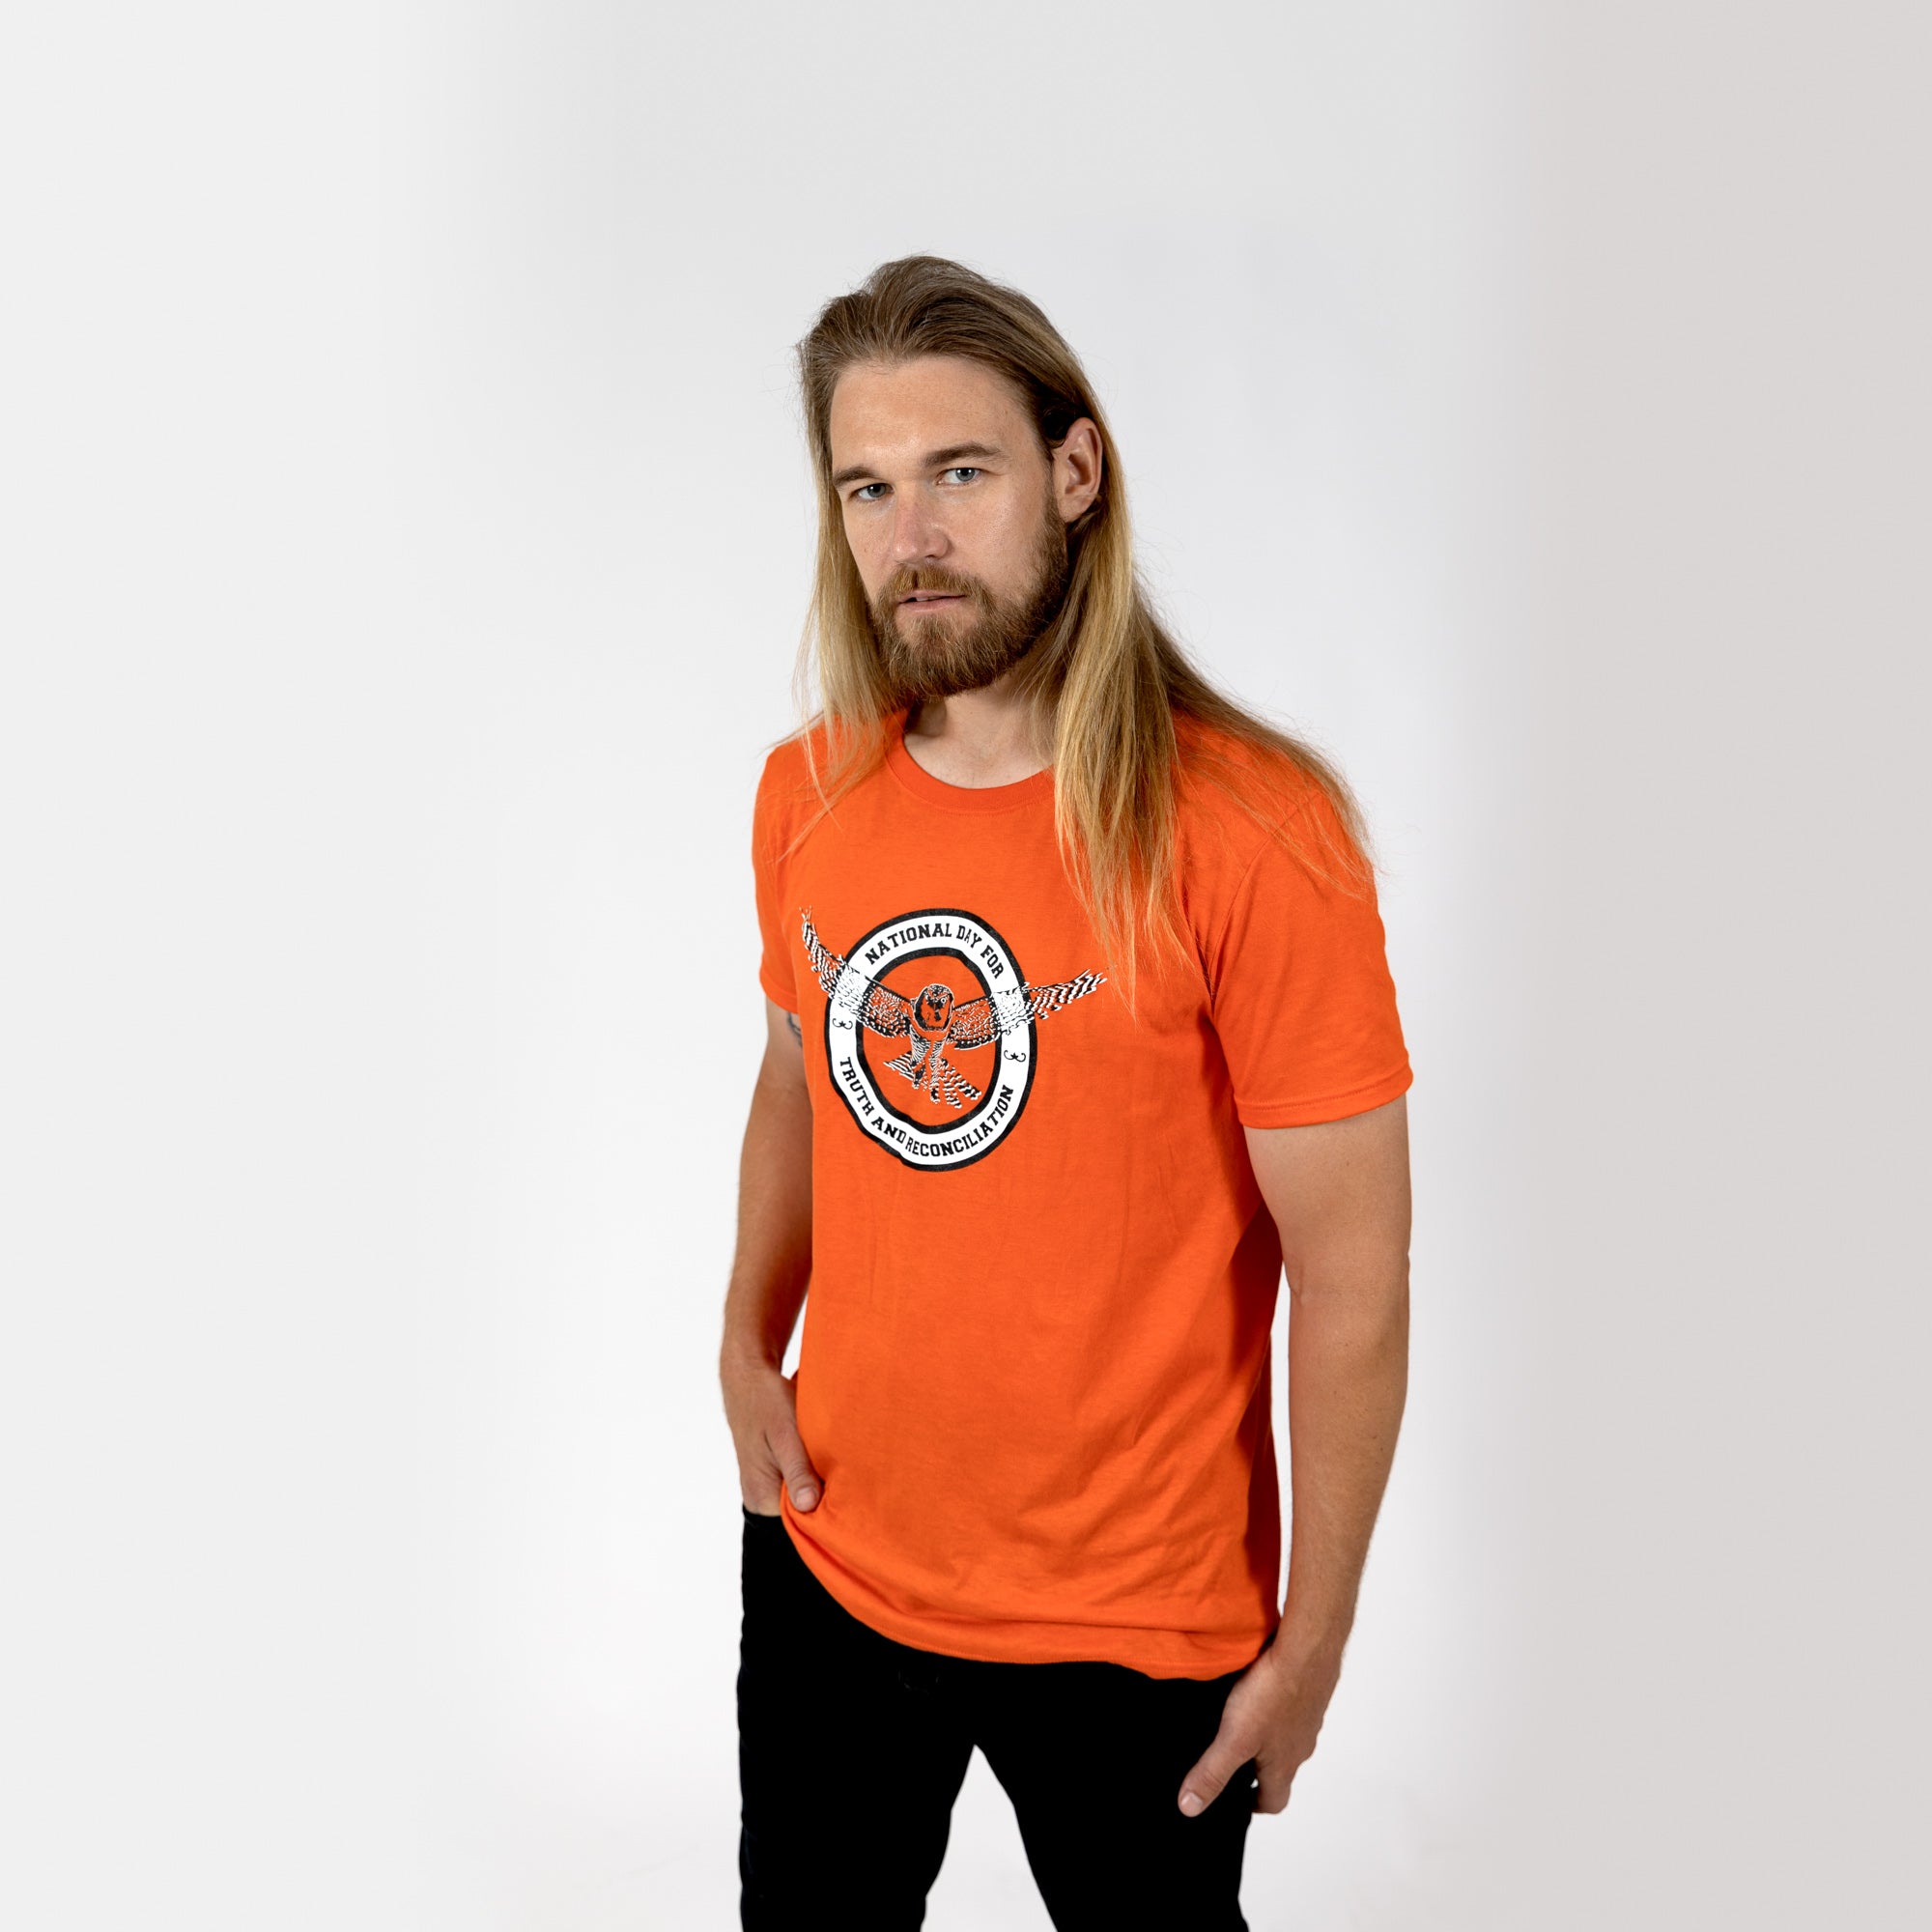 Camiseta Muin X Stanfield's Adulto Naranja - DÍA NACIONAL DE LA VERDAD Y LA RECONCILIACIÓN "BÚHO"